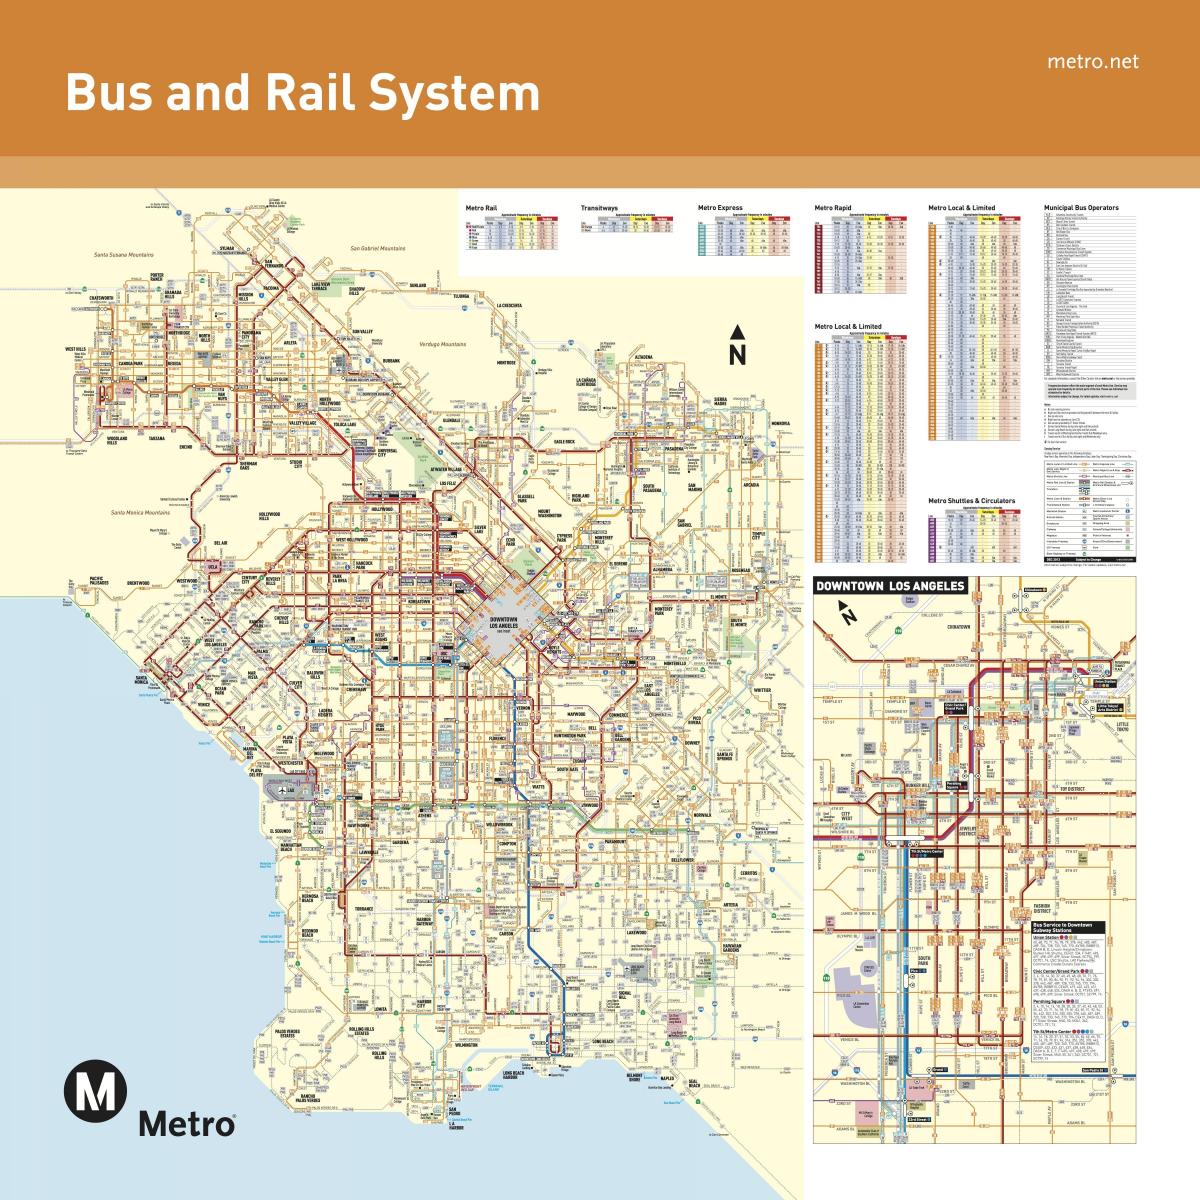 Plan des transports publics de Los Angeles